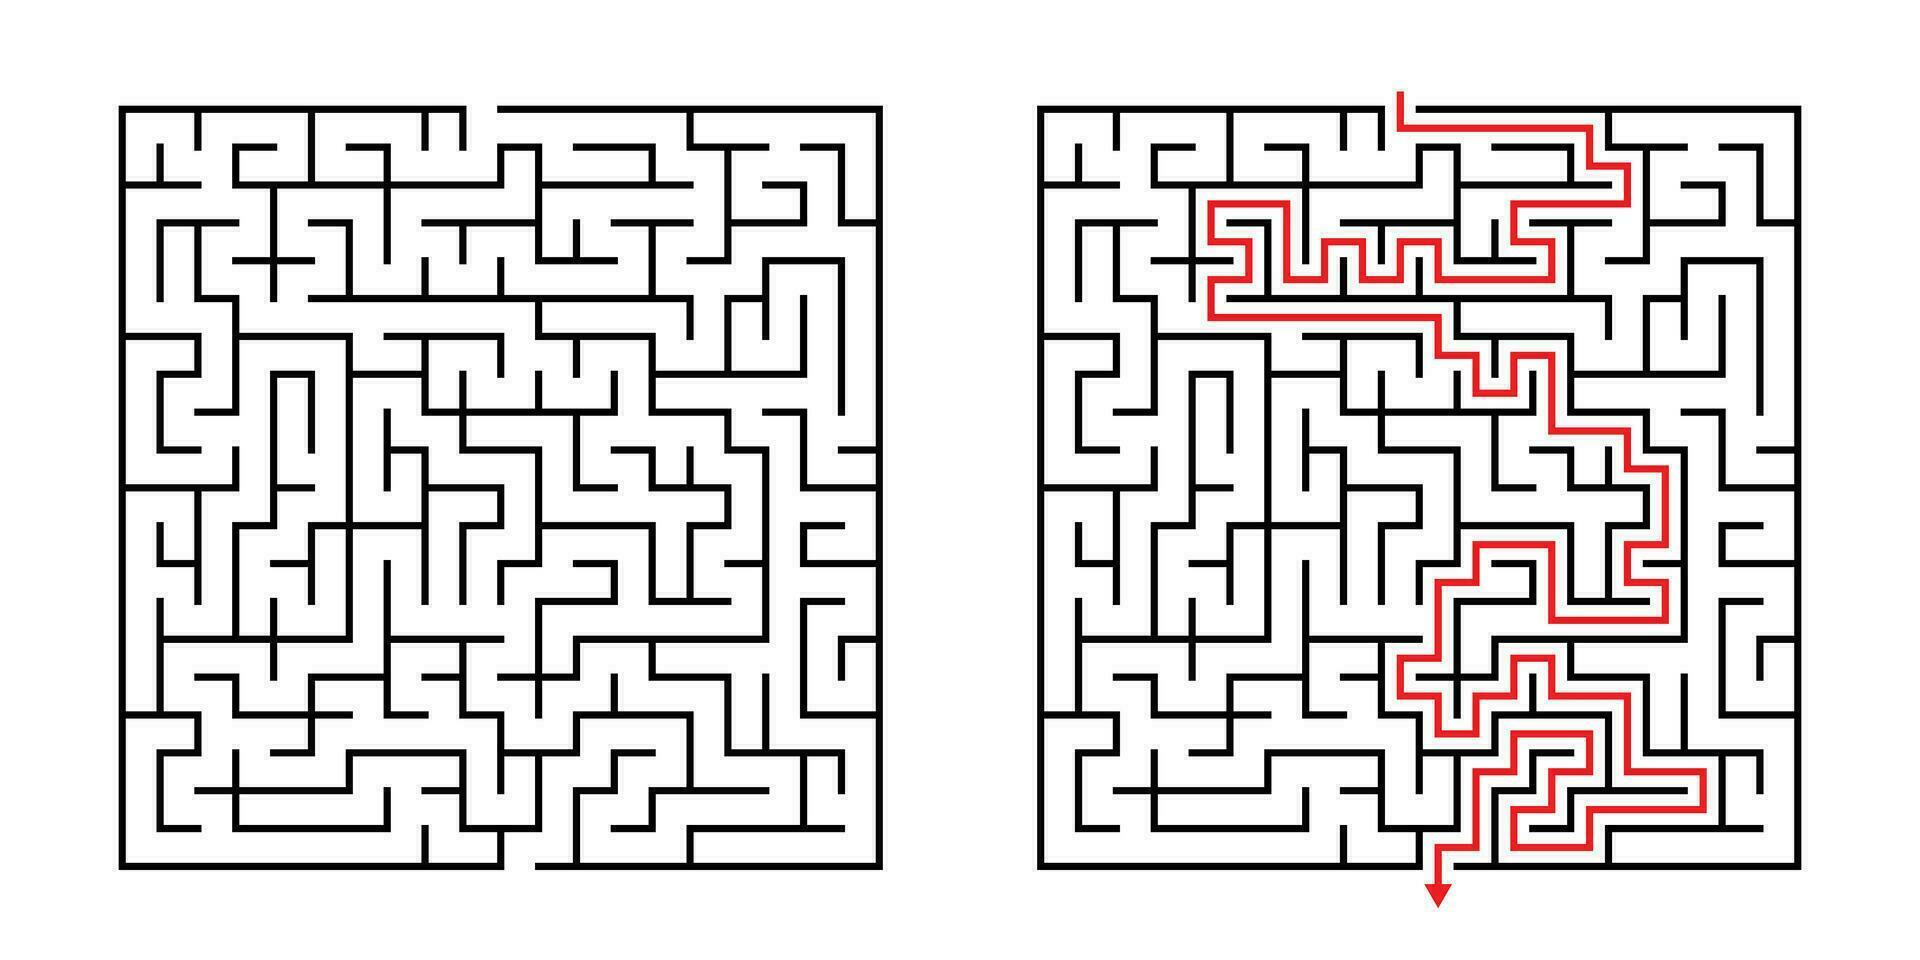 vektor fyrkant labyrint - labyrint med inkluderad lösning i svart röd. rolig pedagogisk sinne spel för samordning, problem lösning, beslut framställning Kompetens testa.